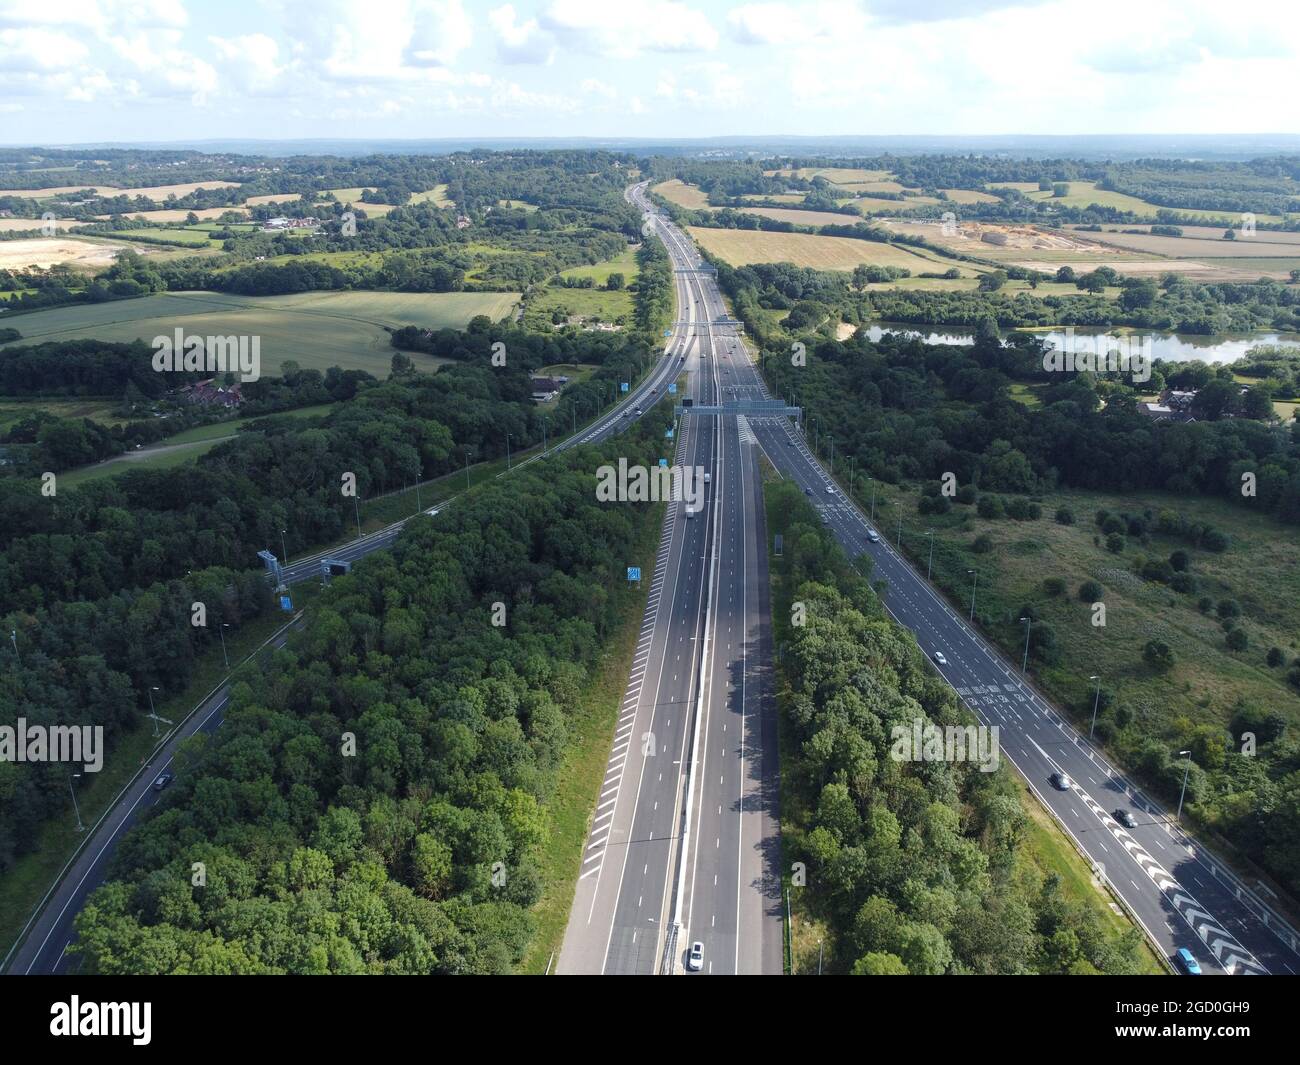 Vista aerea dell'autostrada M25 rivolta in senso antiorario. Foto Stock